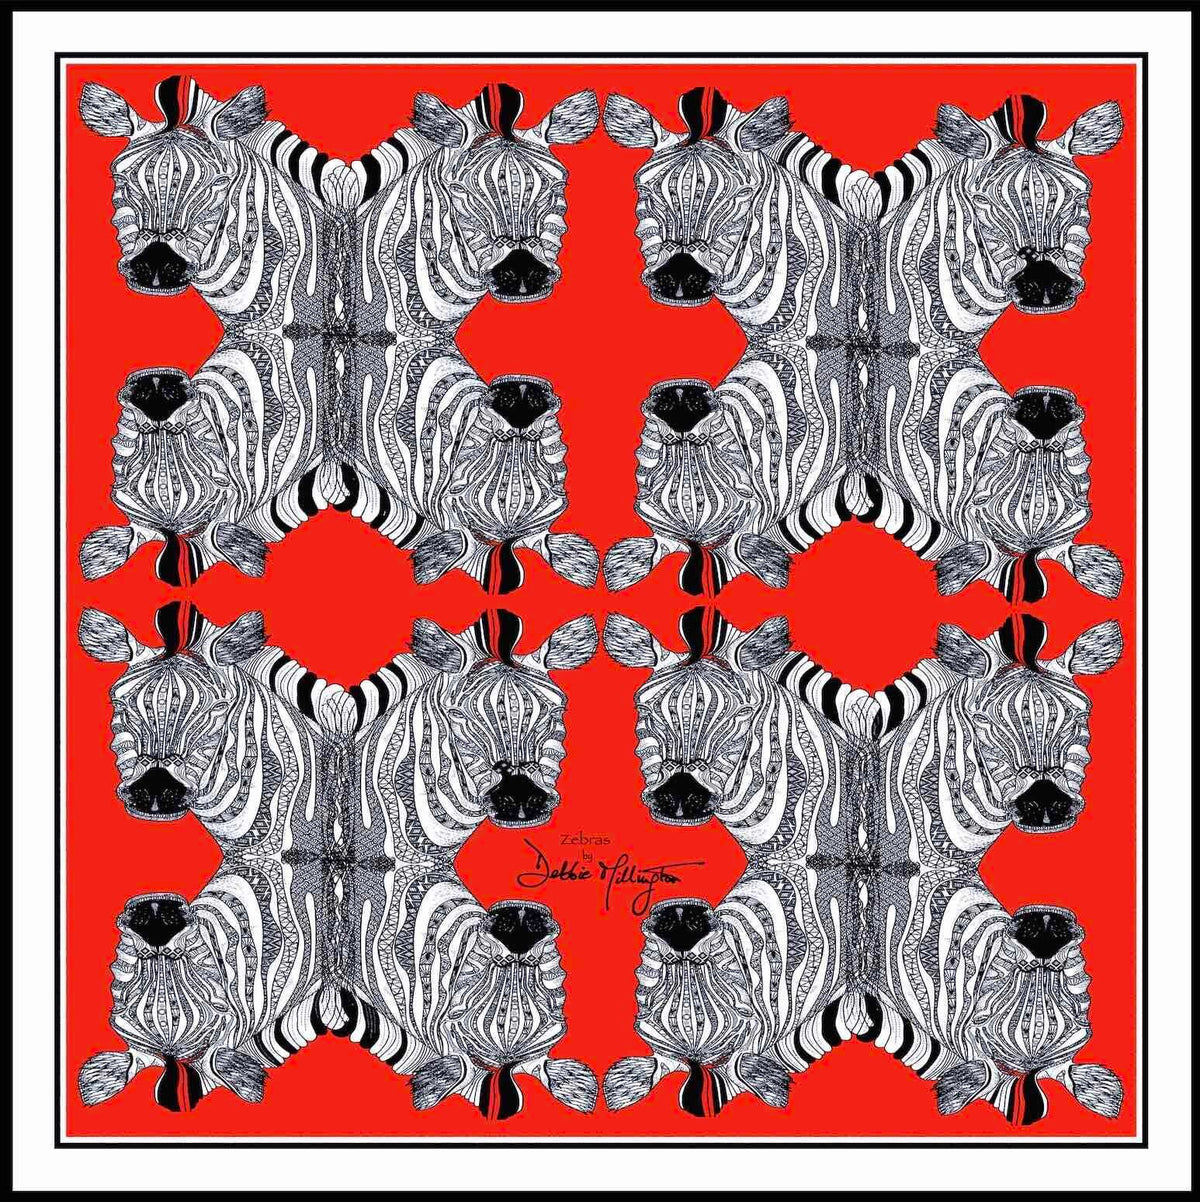 Zebras (Red) Silk Scarf by Debbie Millington